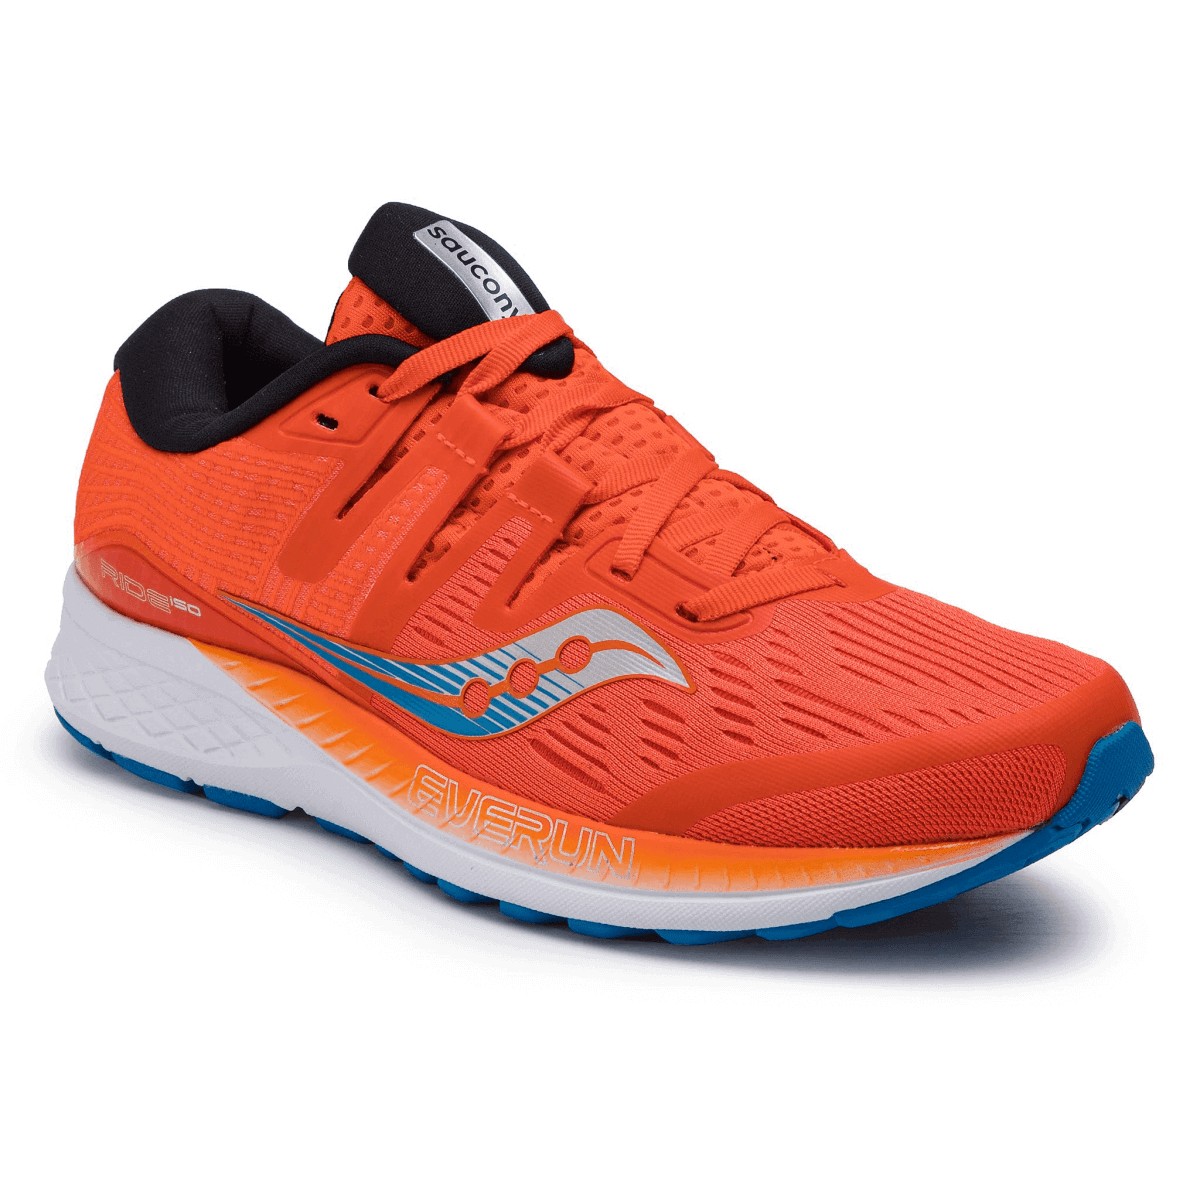 Saucony Ride ISO Men's Running Shoes Orange